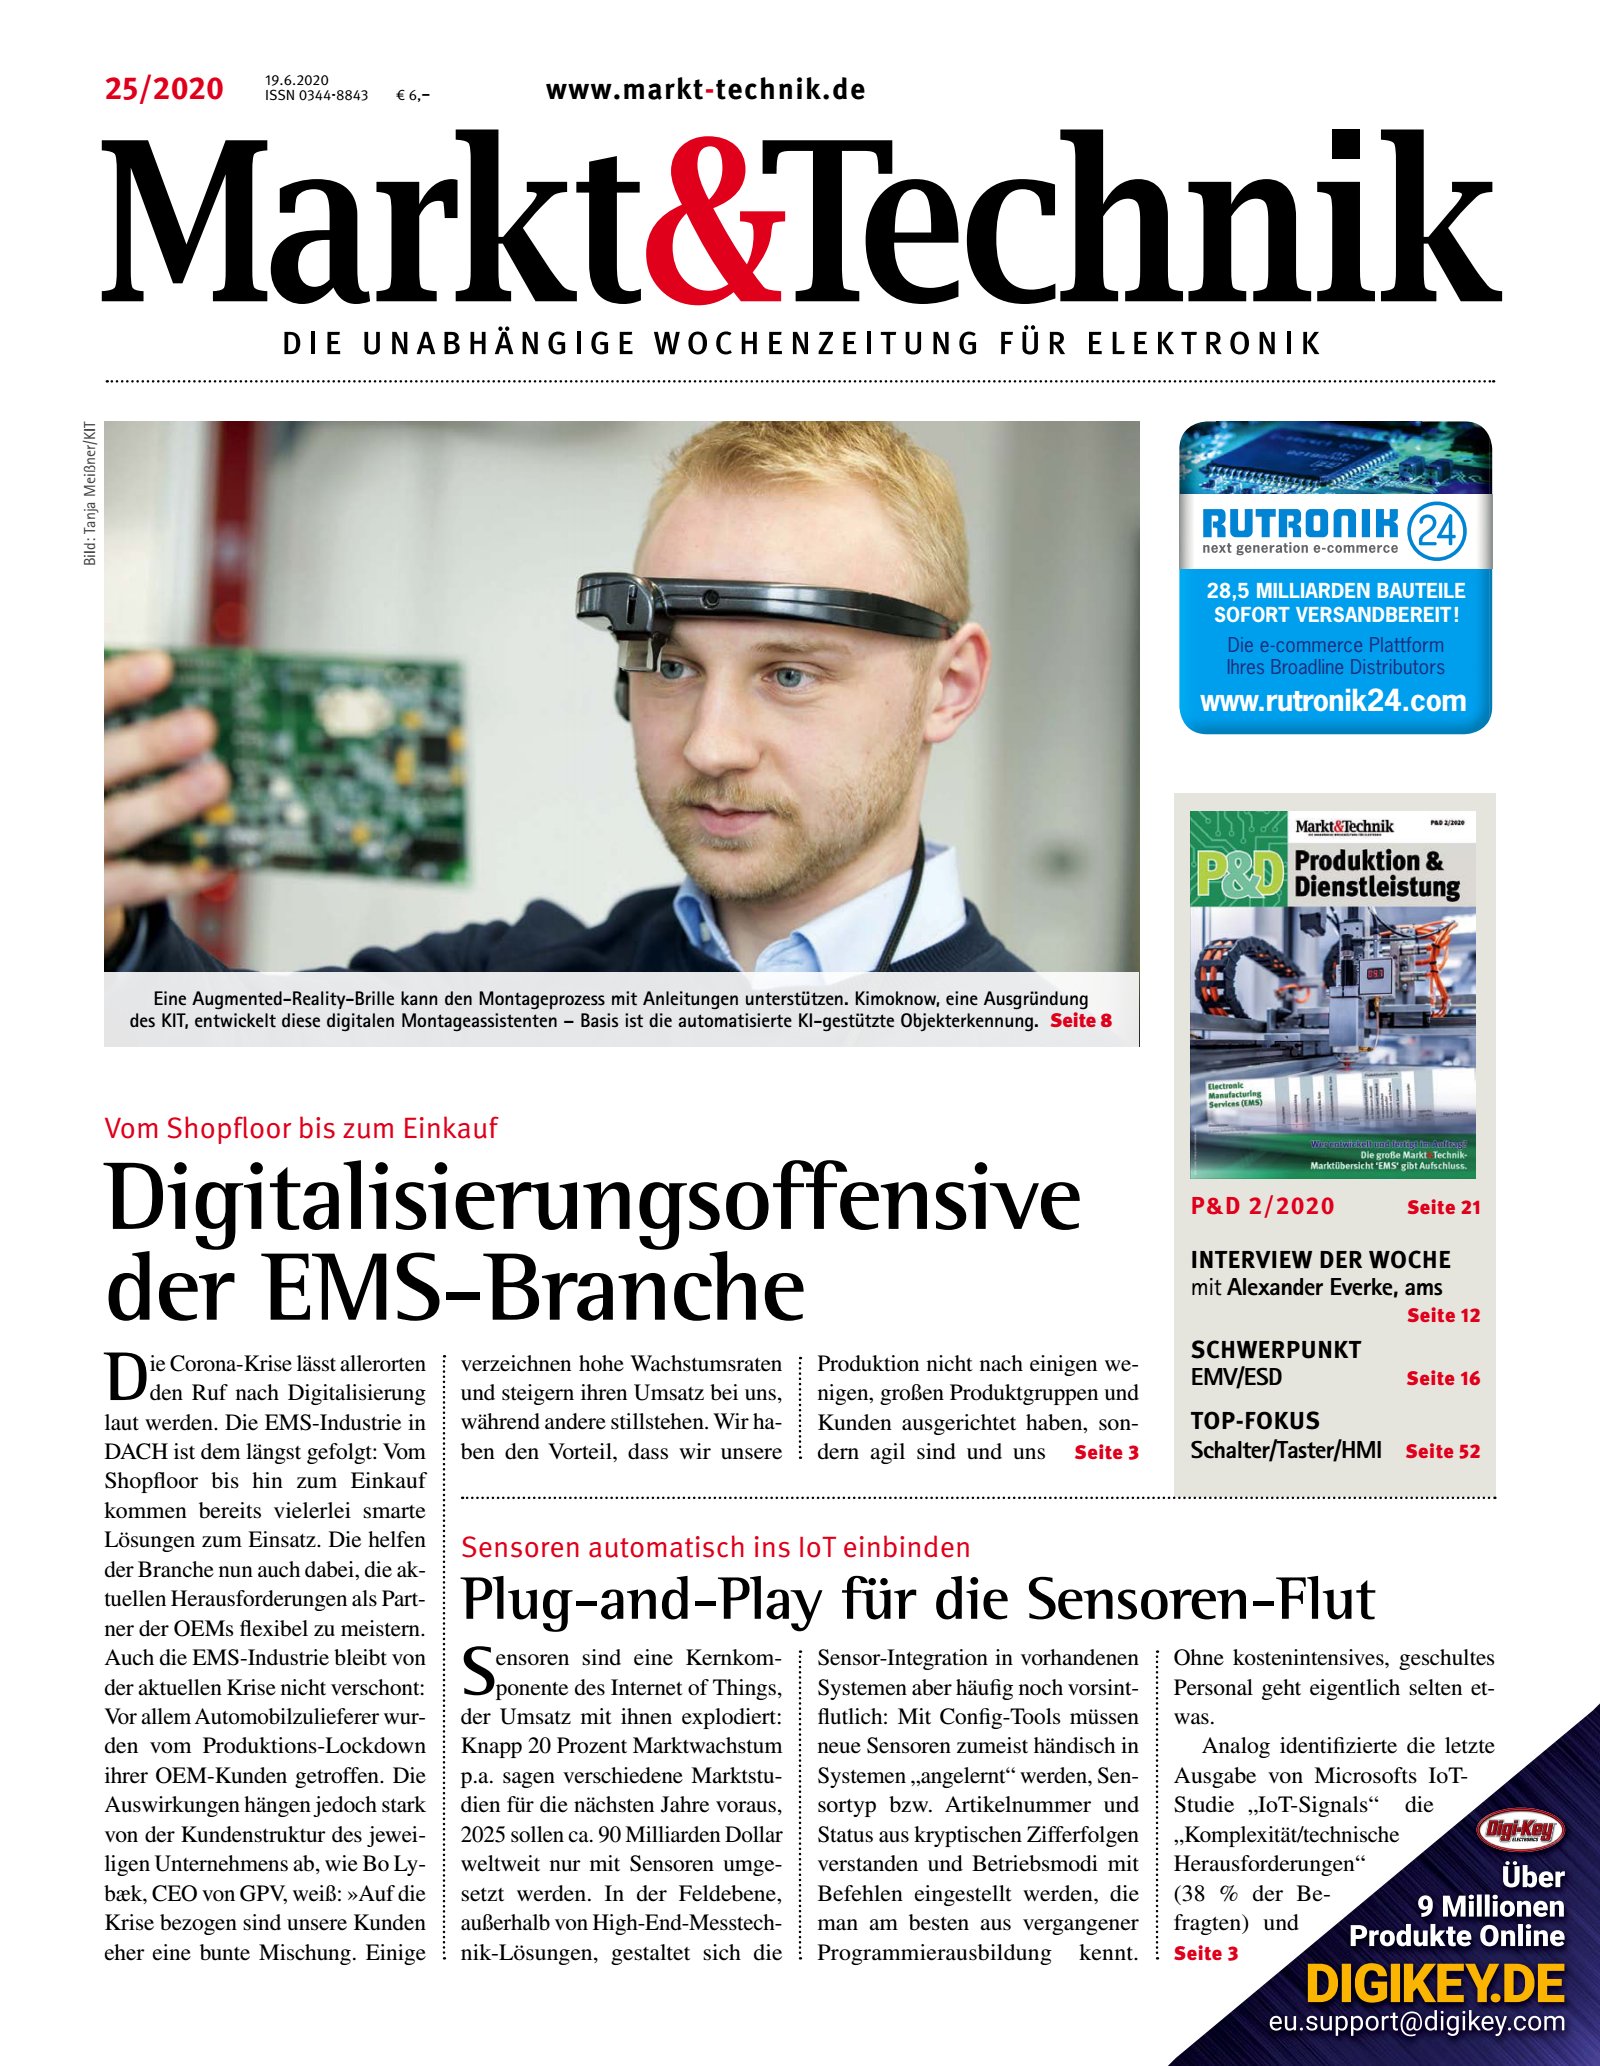 Markt&Technik 25/2020 Digital